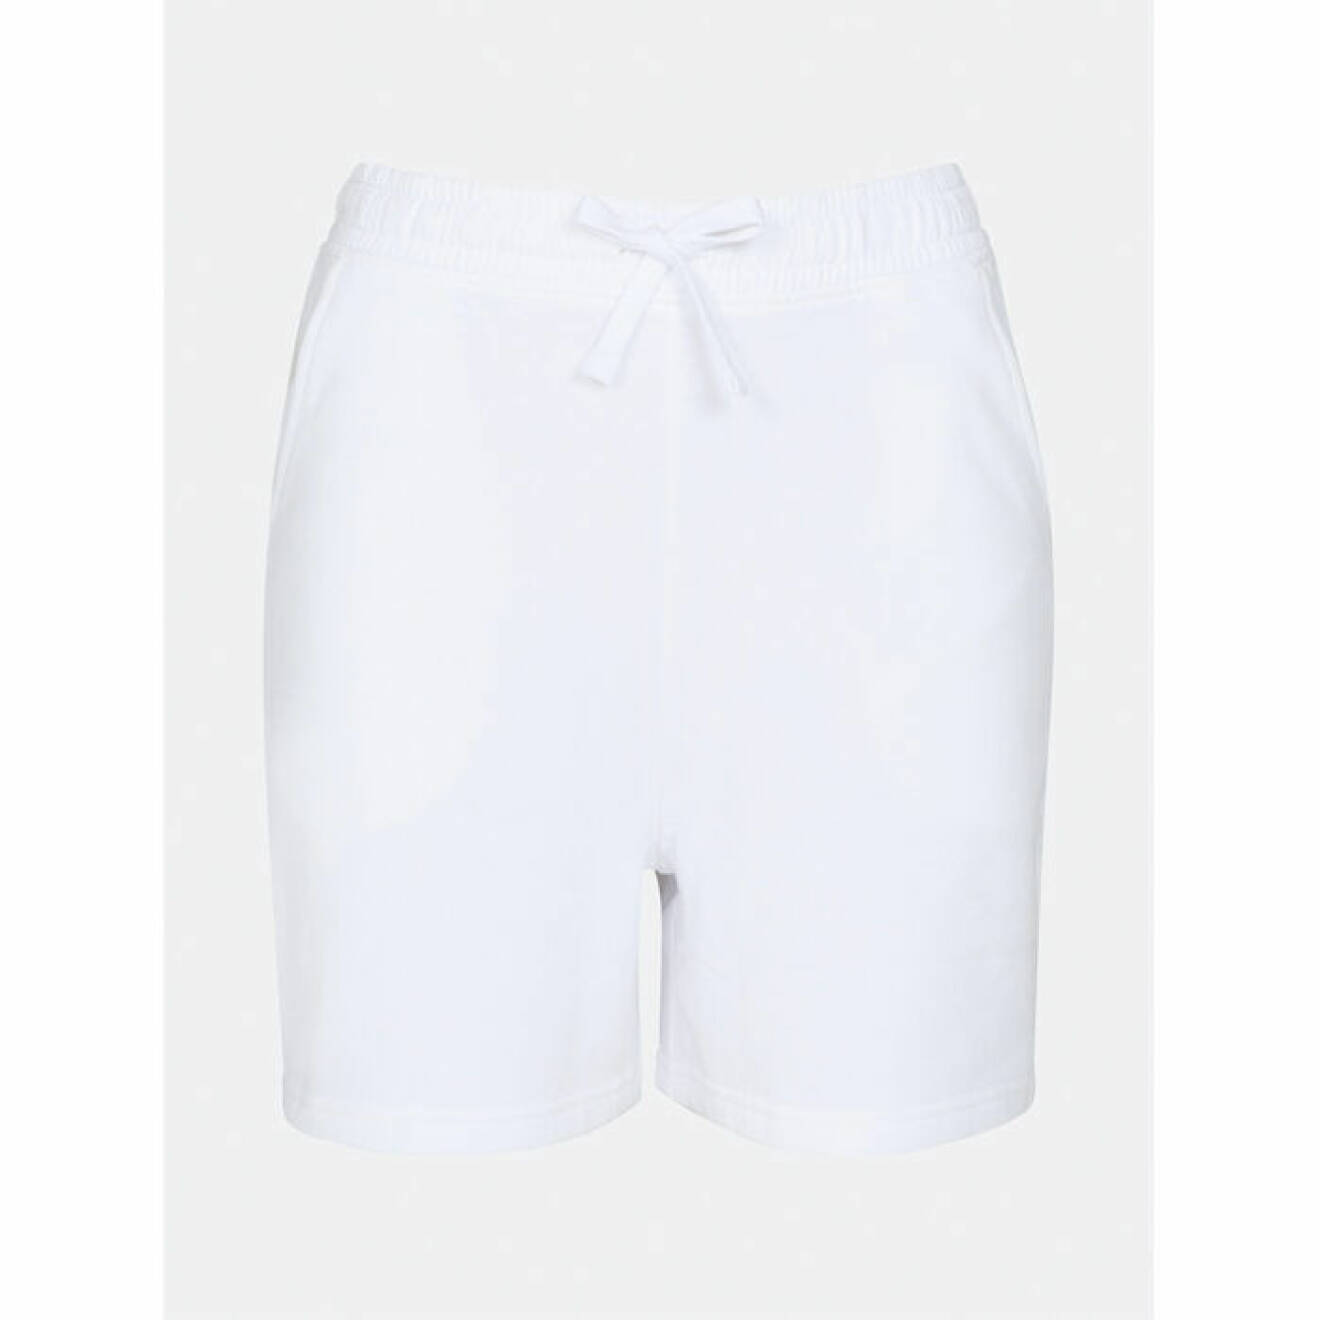 Vita shorts från Cubus